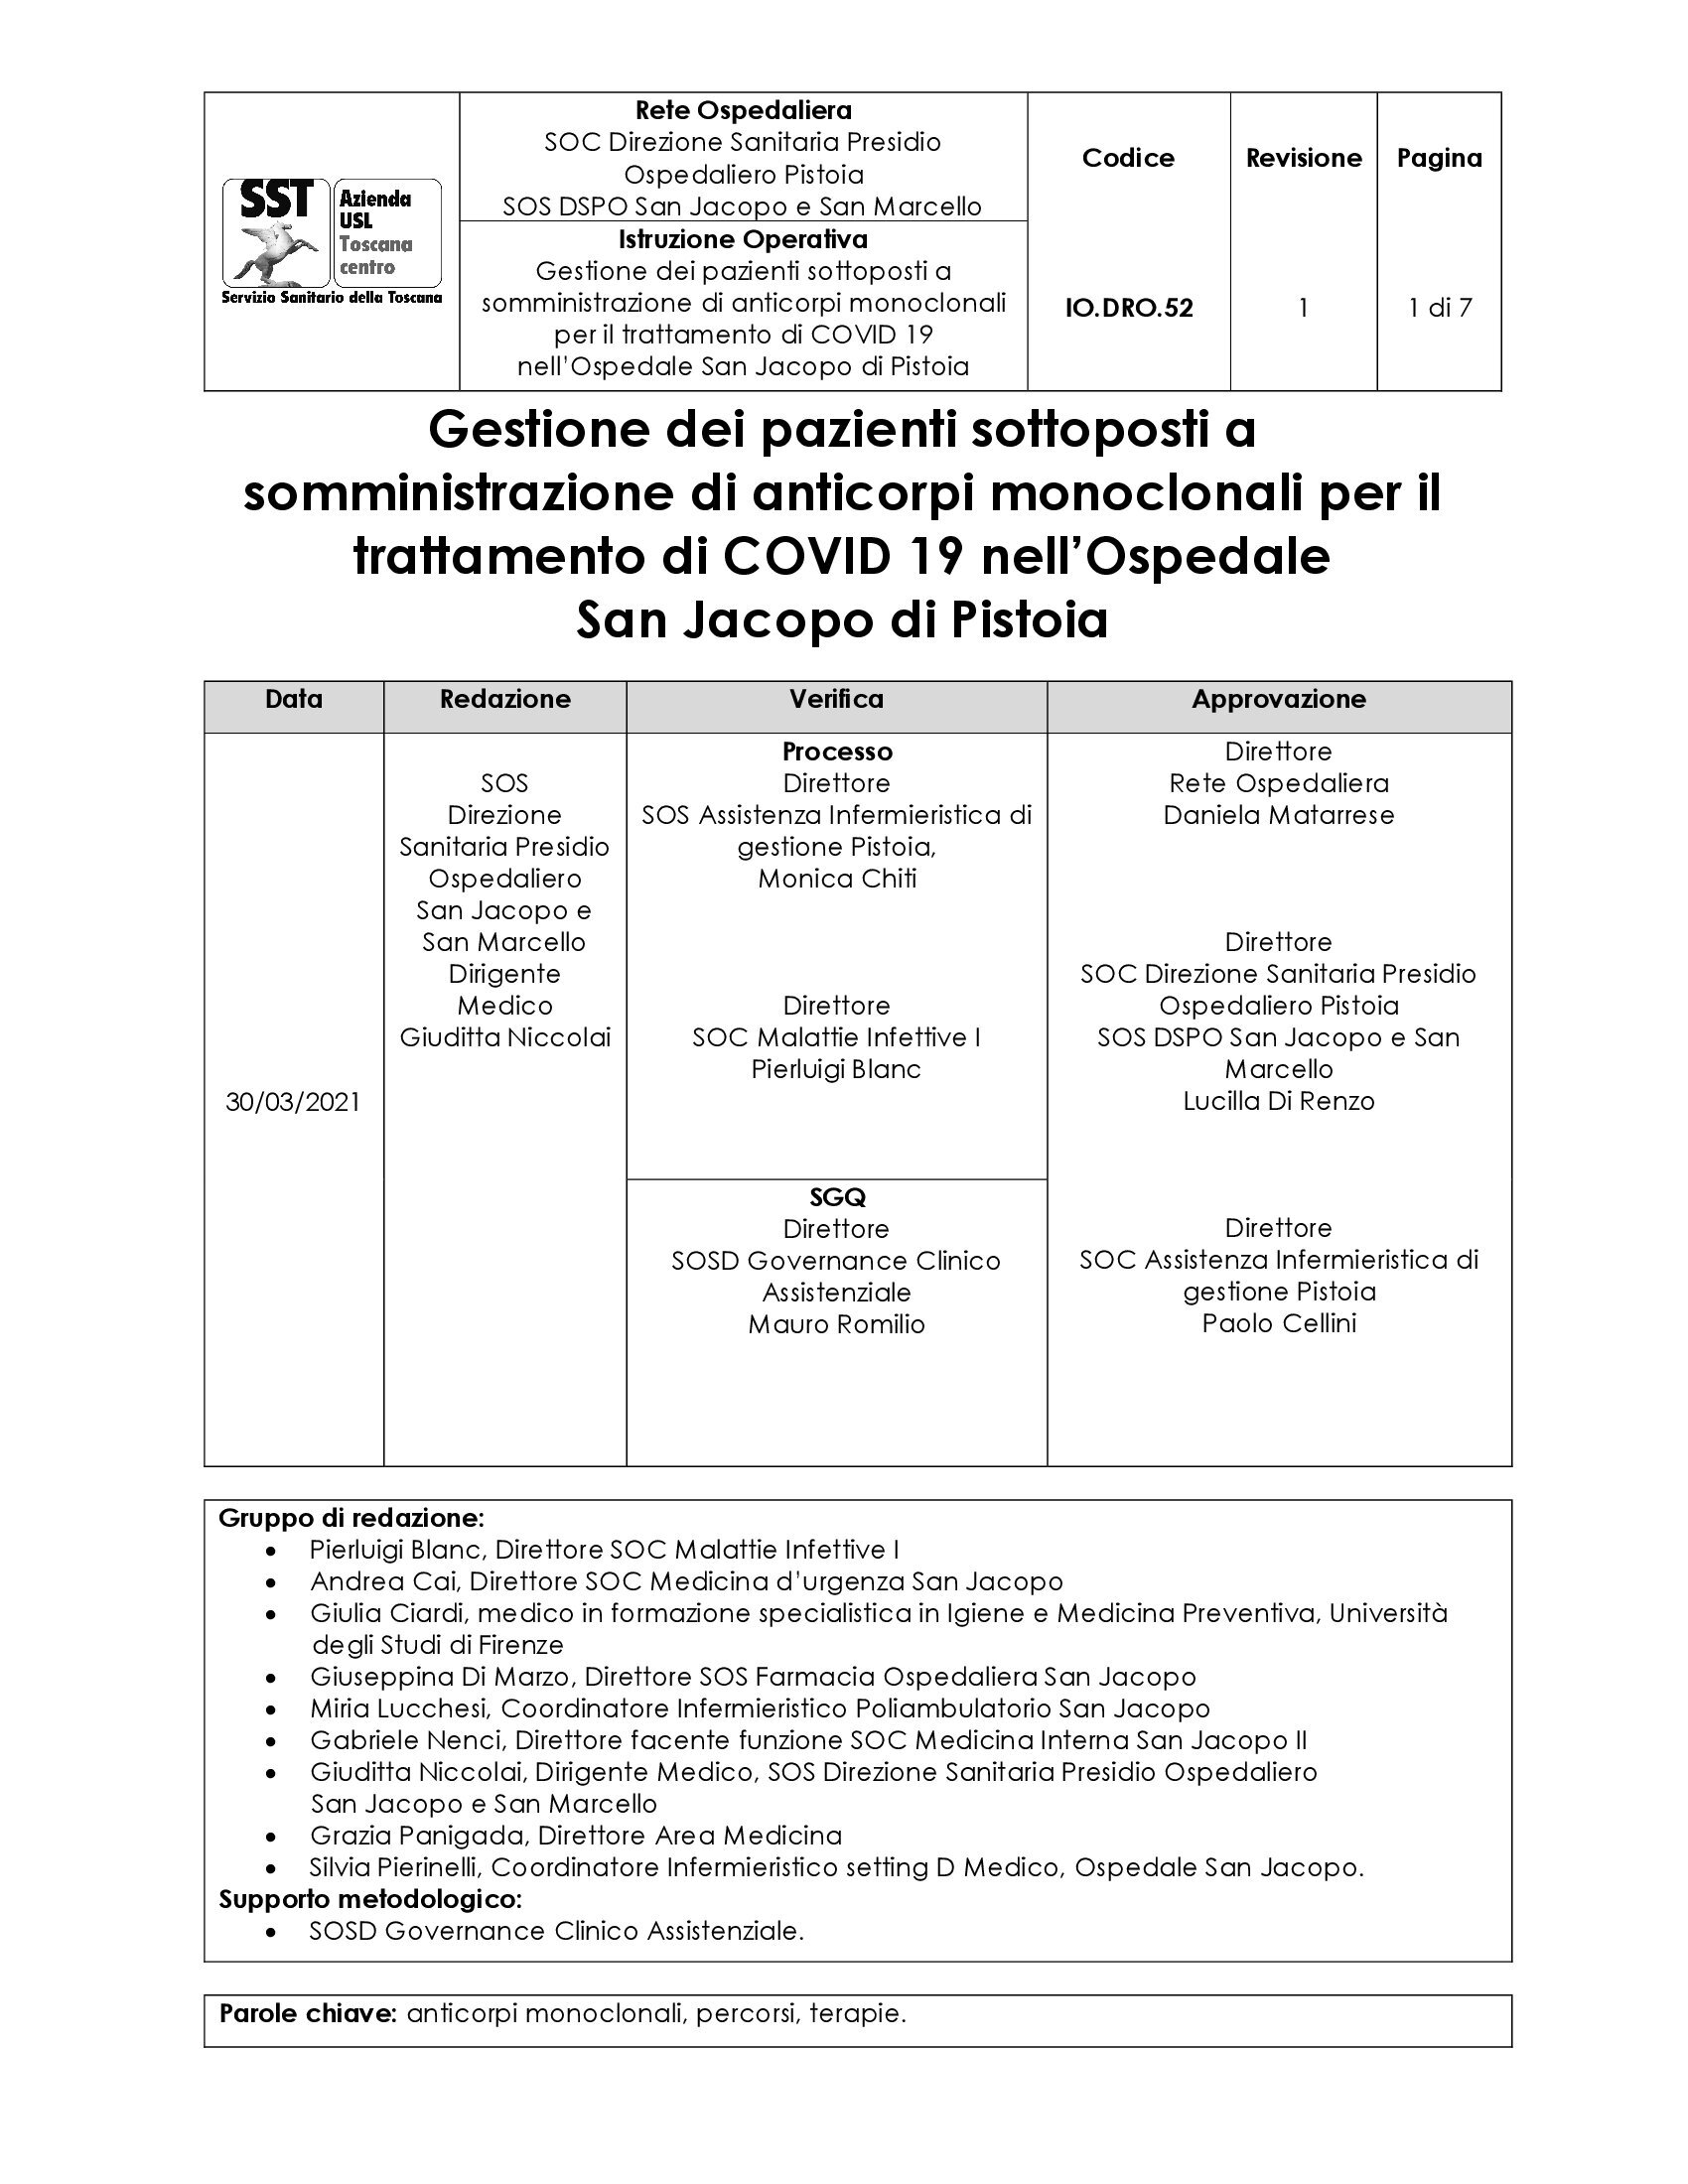 IO.DRO.52 rev.1 Gestione dei pazienti sottoposti a somministrazione di anticorpi monoclonali per il trattamento di COVID 19 nell’Ospedale San Jacopo di Pistoia